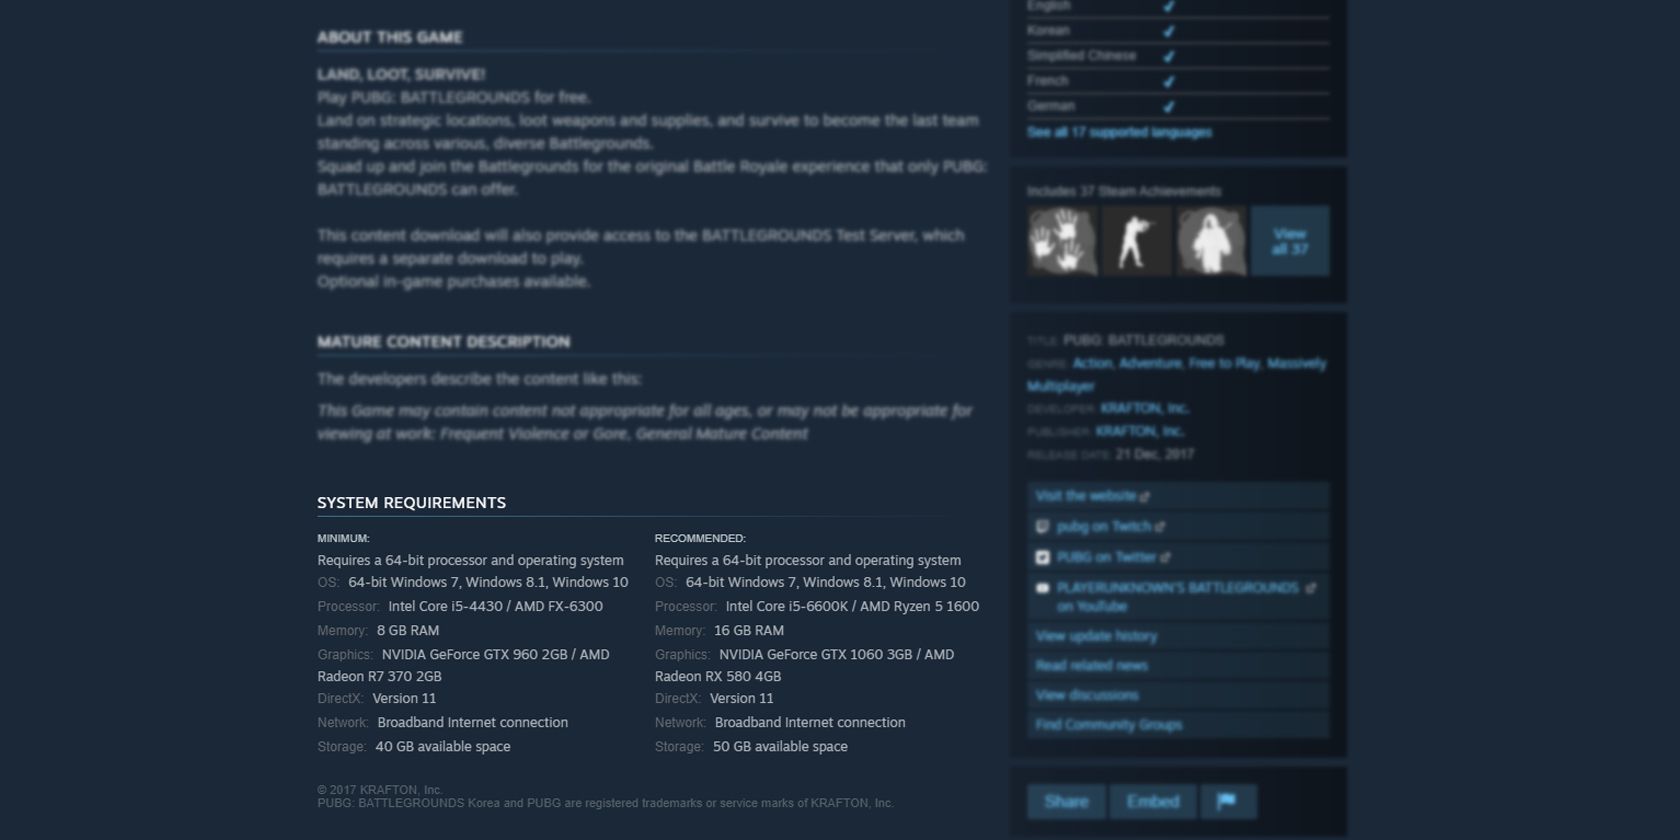 Capture d'écran de la configuration système requise pour le jeu Steam